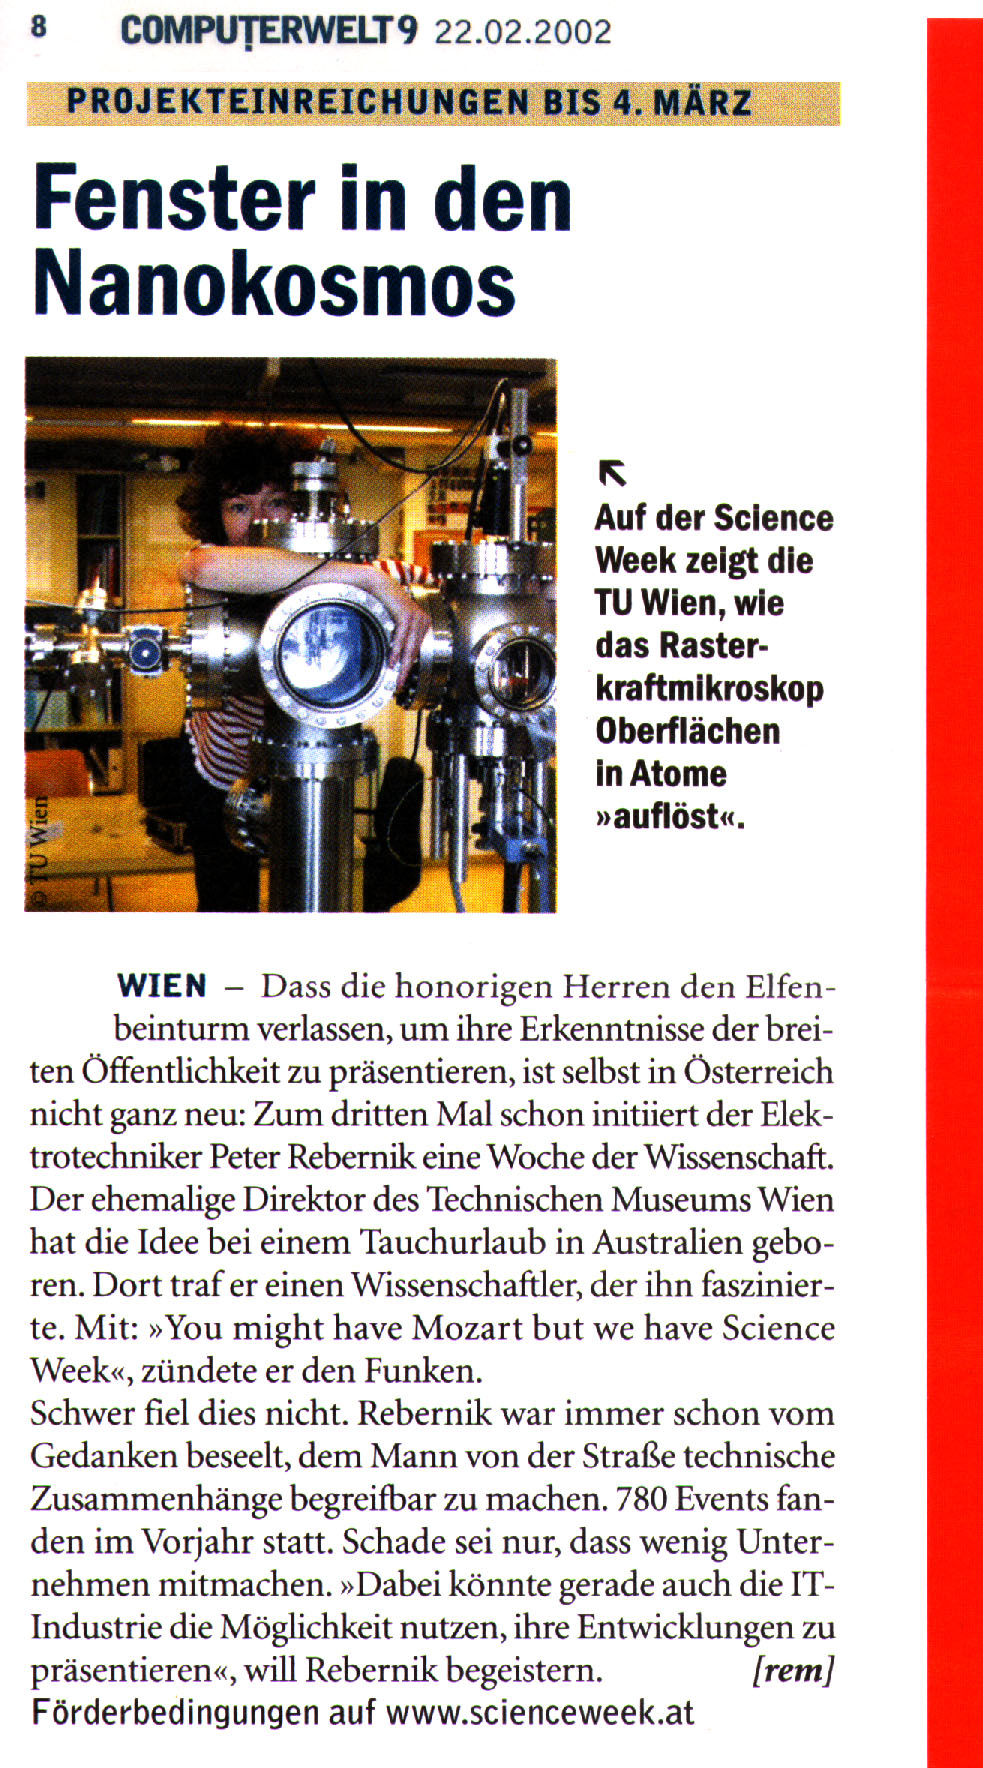  - scienceweek2002